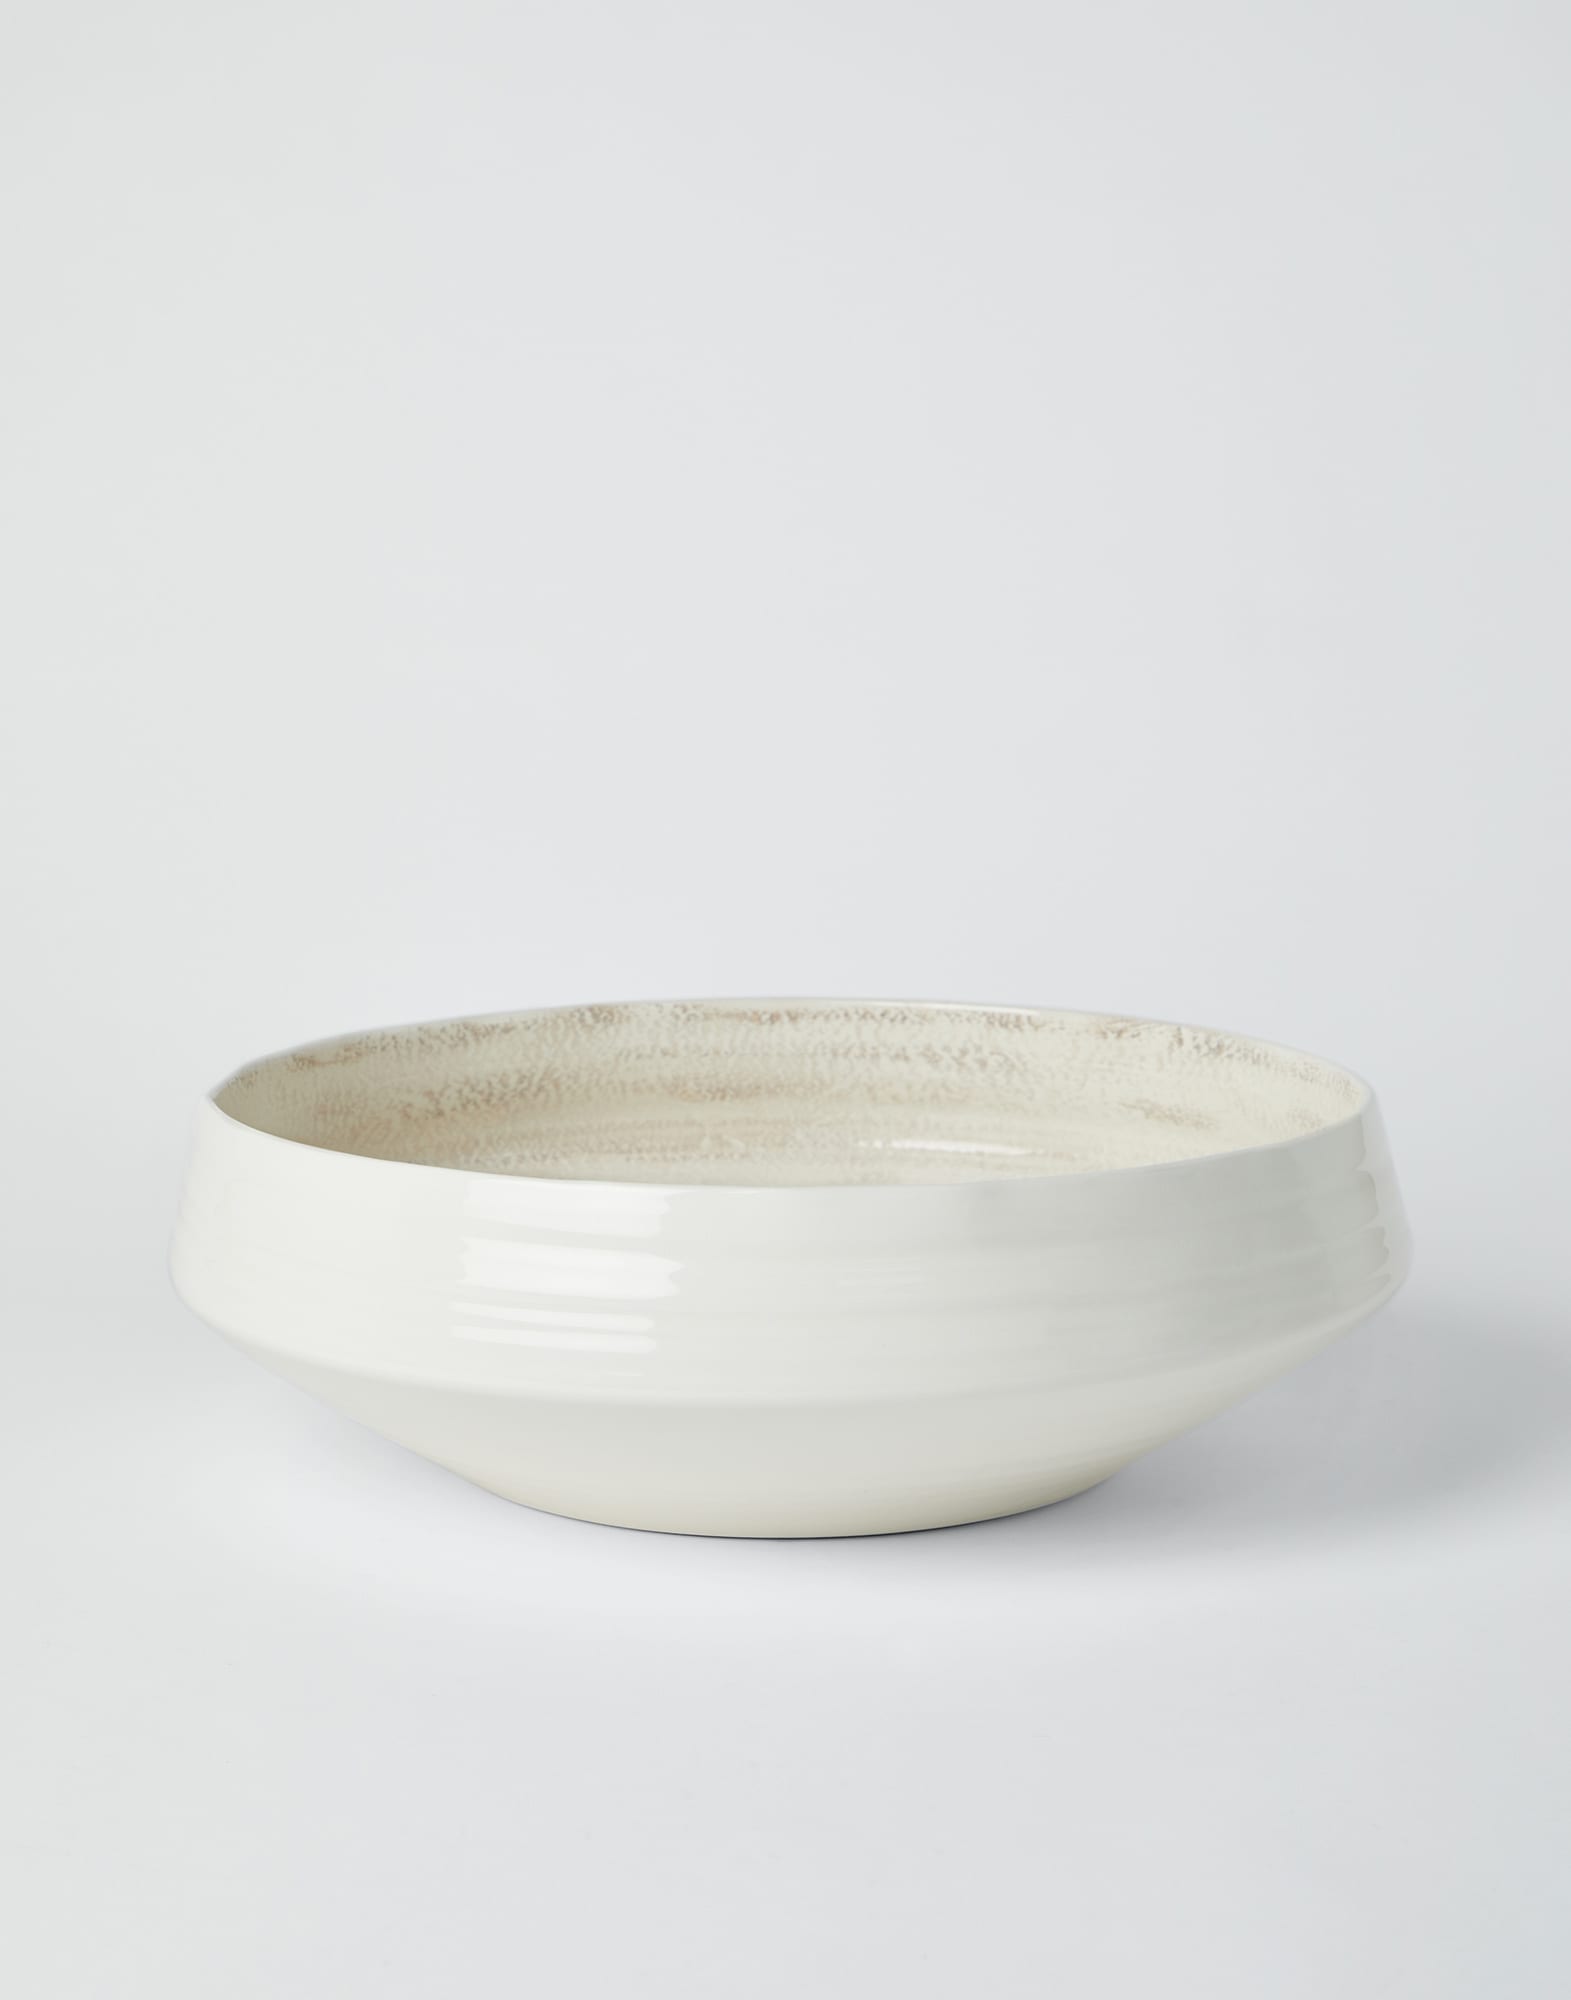 Maxi ceramic vase Lessivè Lifestyle - Brunello Cucinelli